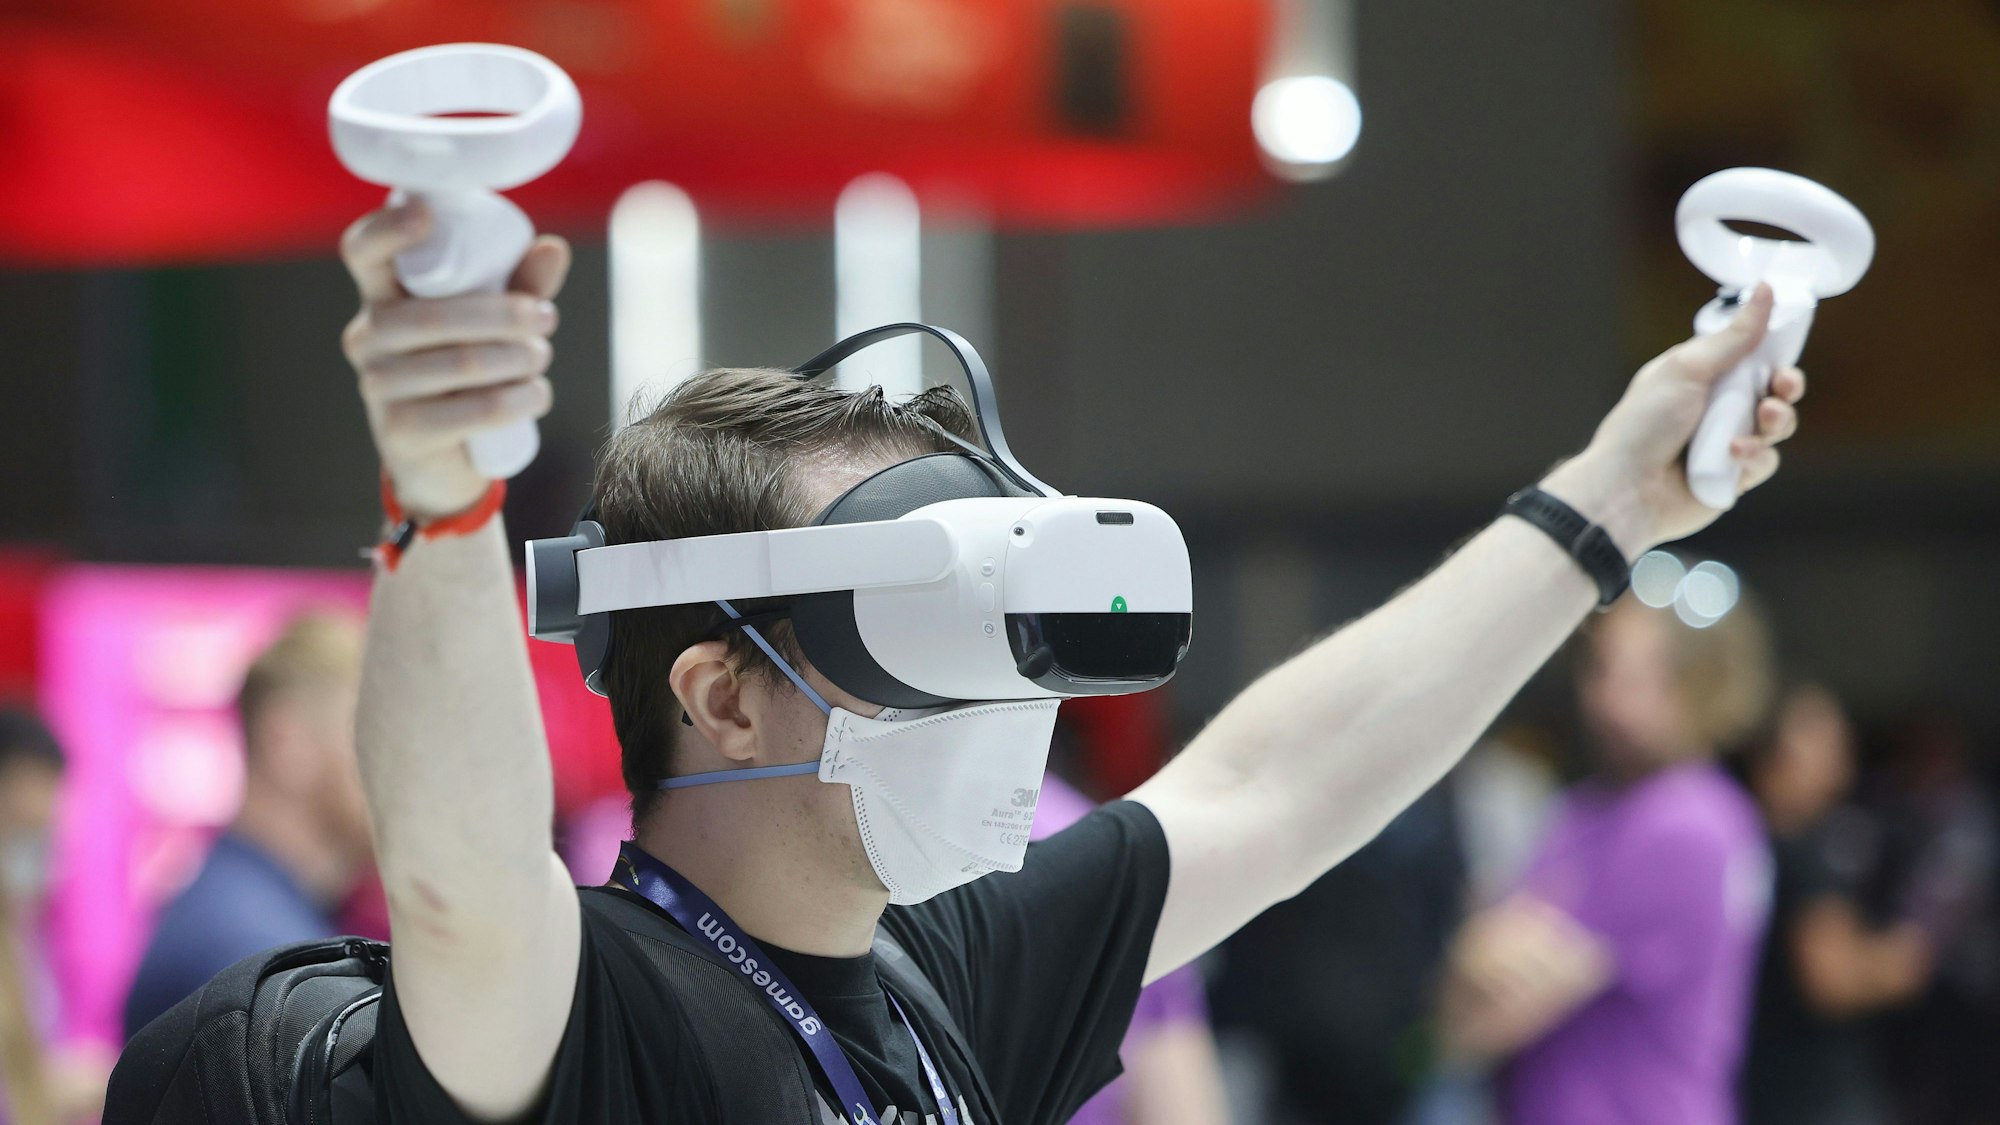 Ein Messebesucher testet mit einer VR-Brille (Virtual Reality) ein Computerspiel.